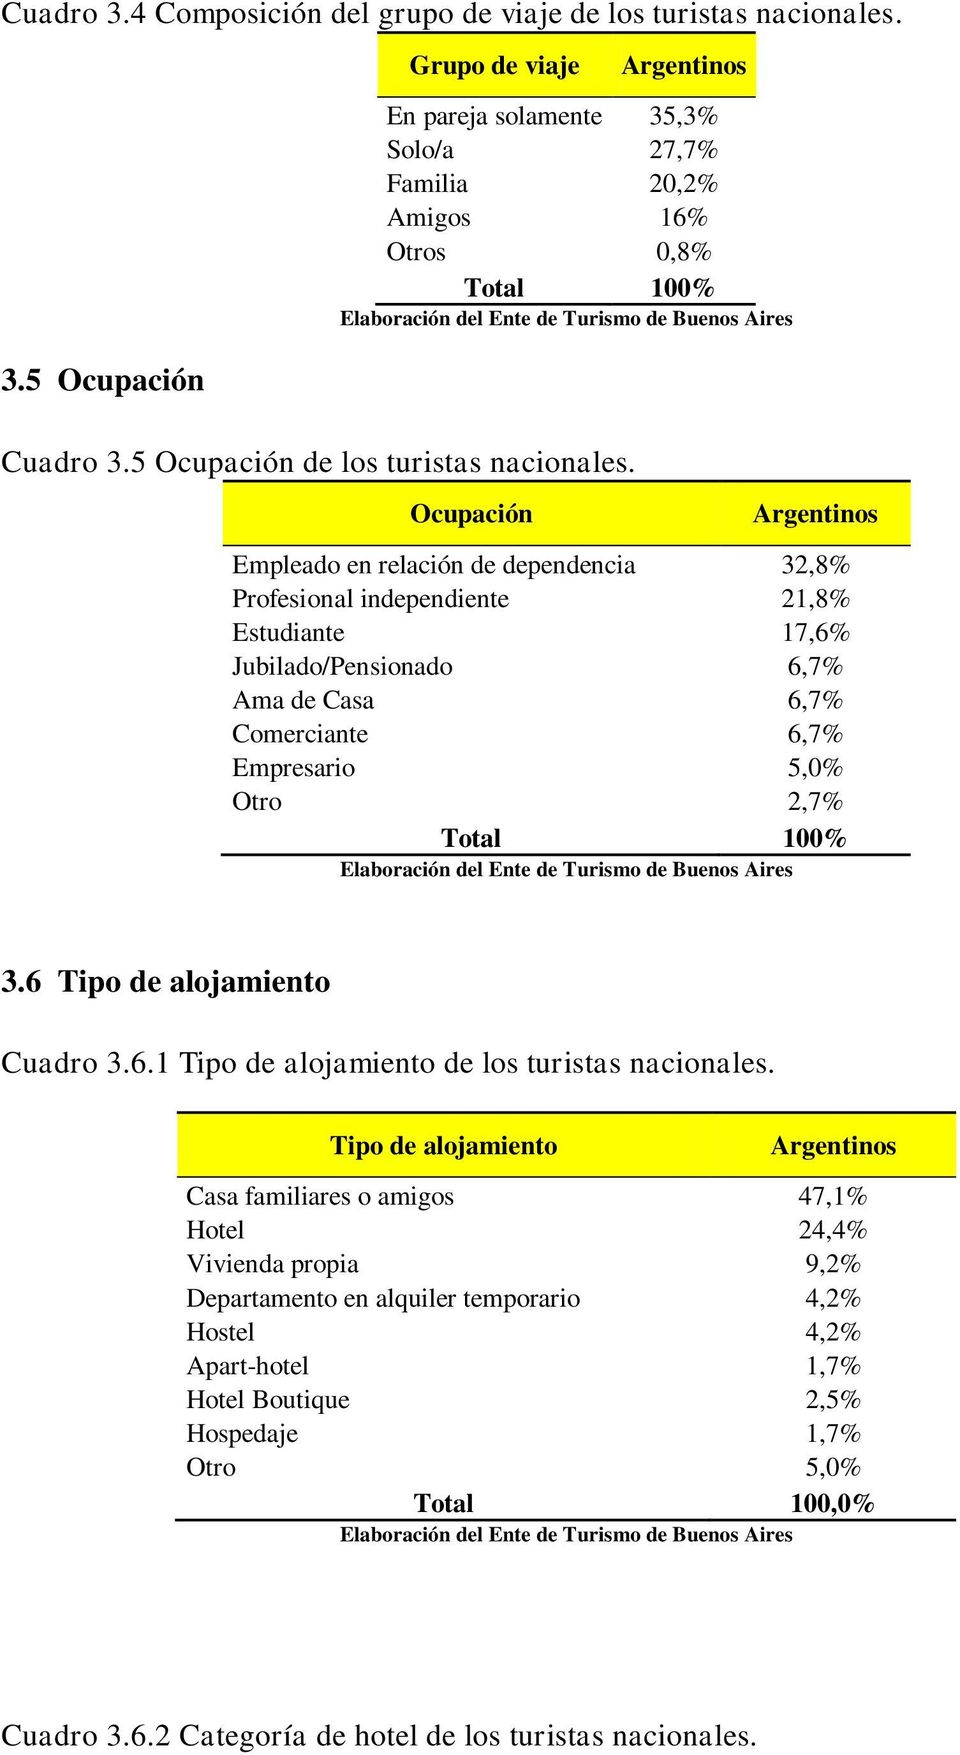 Ocupación Argentinos Empleado en relación de dependencia 32,8% Profesional independiente 21,8% Estudiante 17,6% Jubilado/Pensionado 6,7% Ama de Casa 6,7% Comerciante 6,7% Empresario 5,0% Otro 2,7% 3.